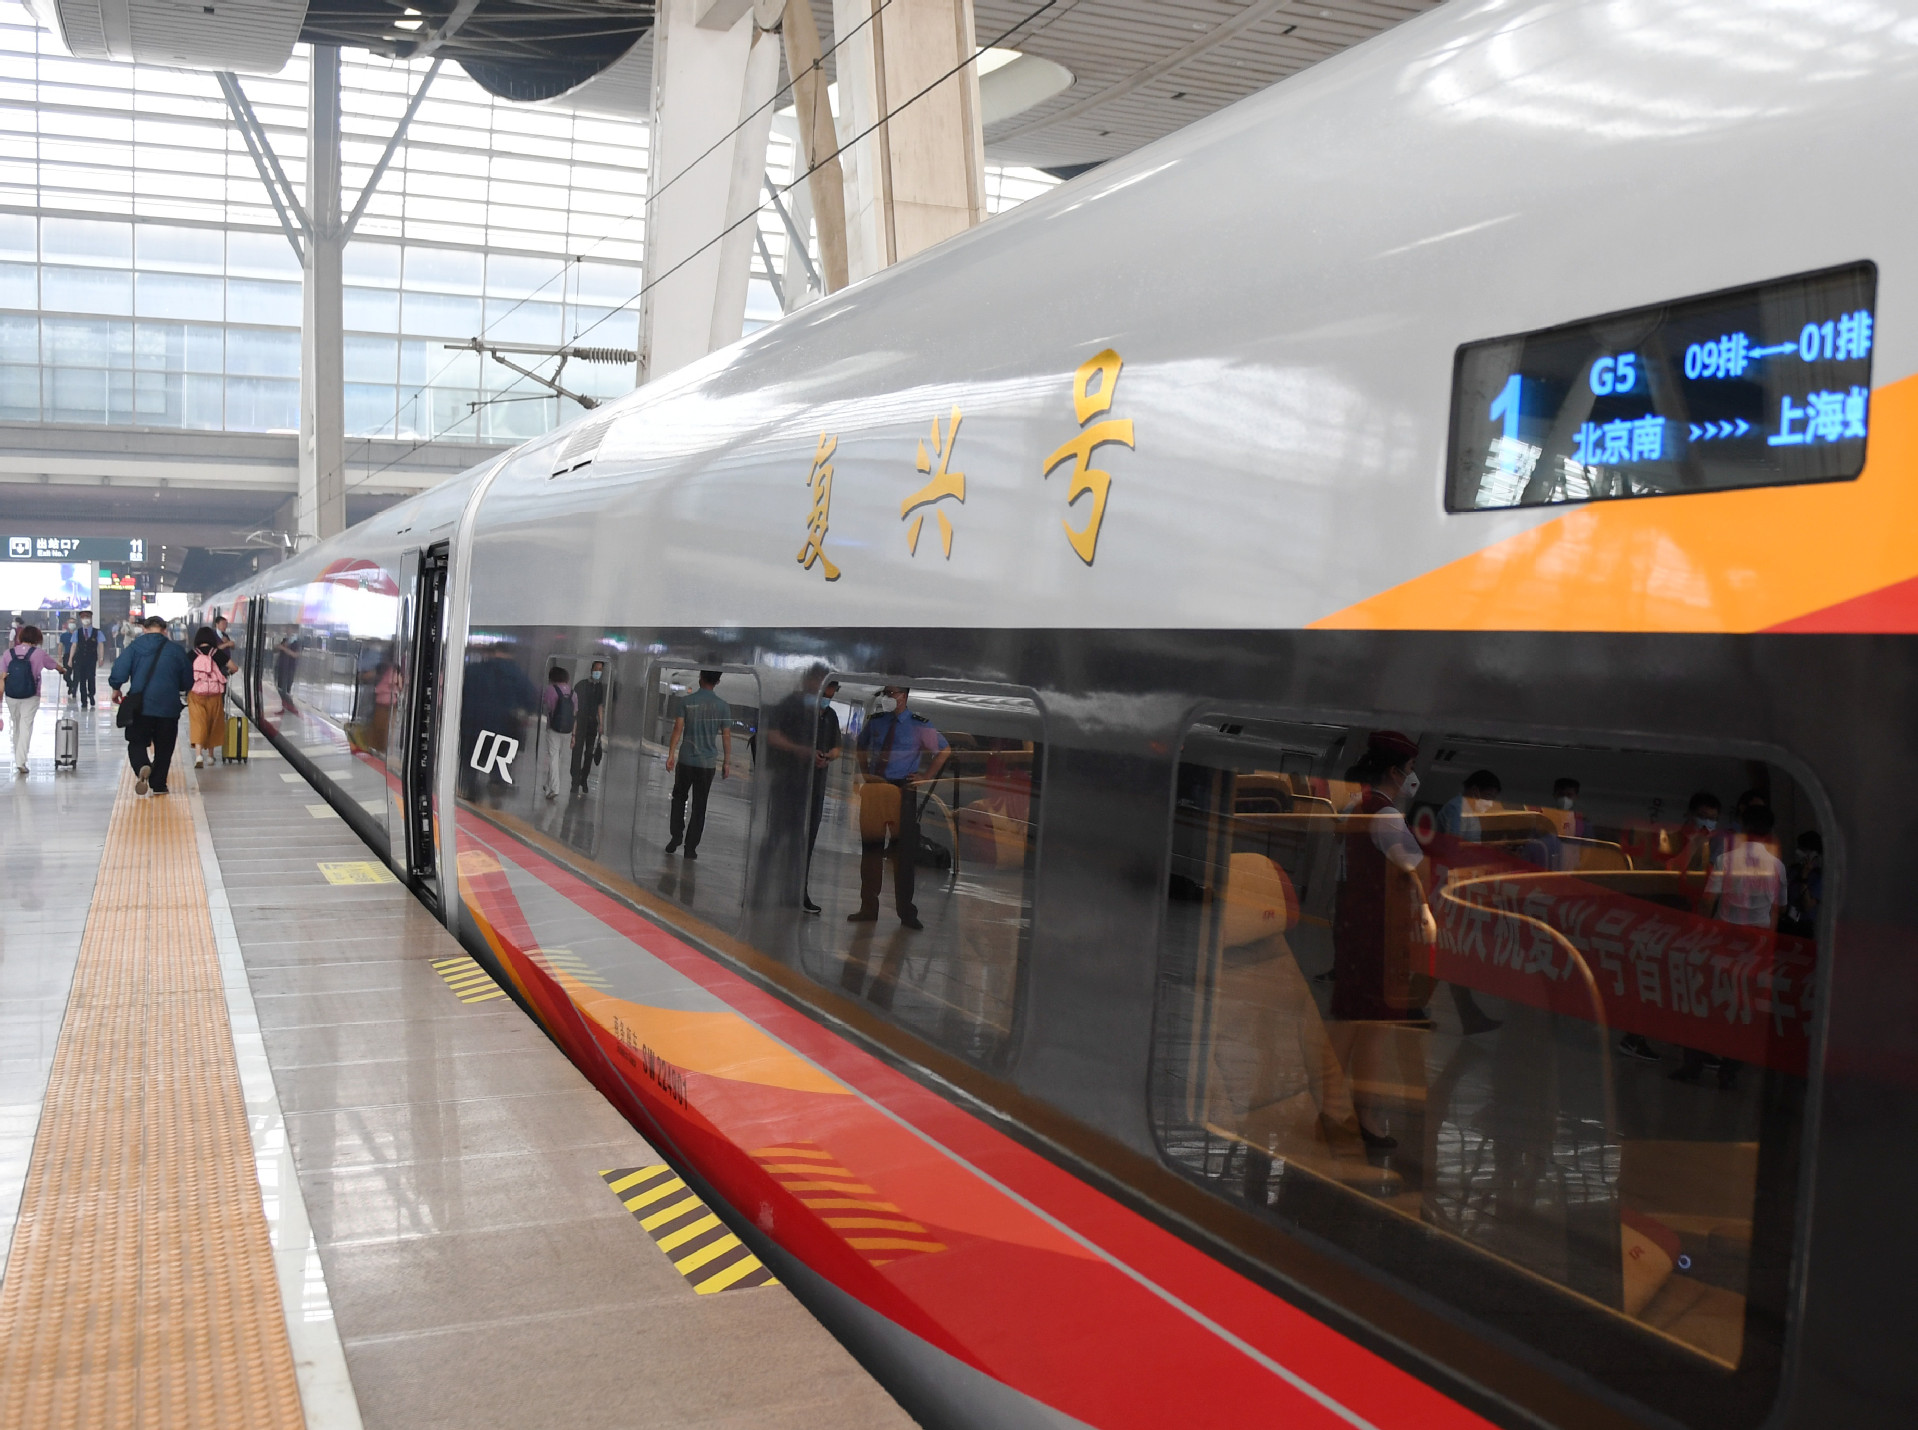 中国铁路营业里程超14万公里 其中高铁3.6万公里 稳居世界第一-中国铁路,高铁,世界第一 ——快科技(驱动之家旗下媒体)--科技改变未来